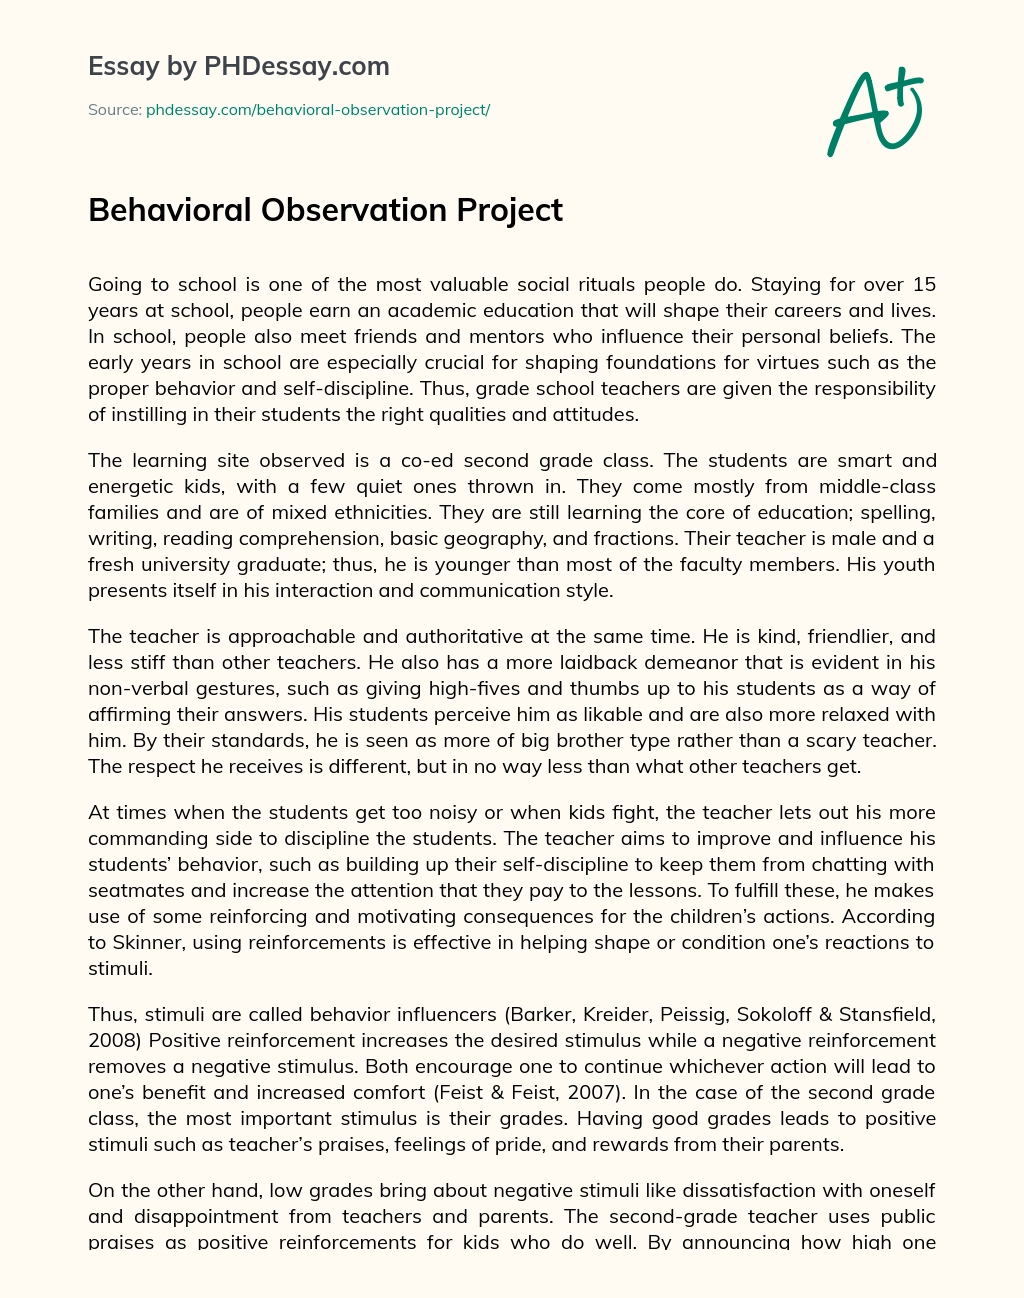 Behavioral Observation Project essay